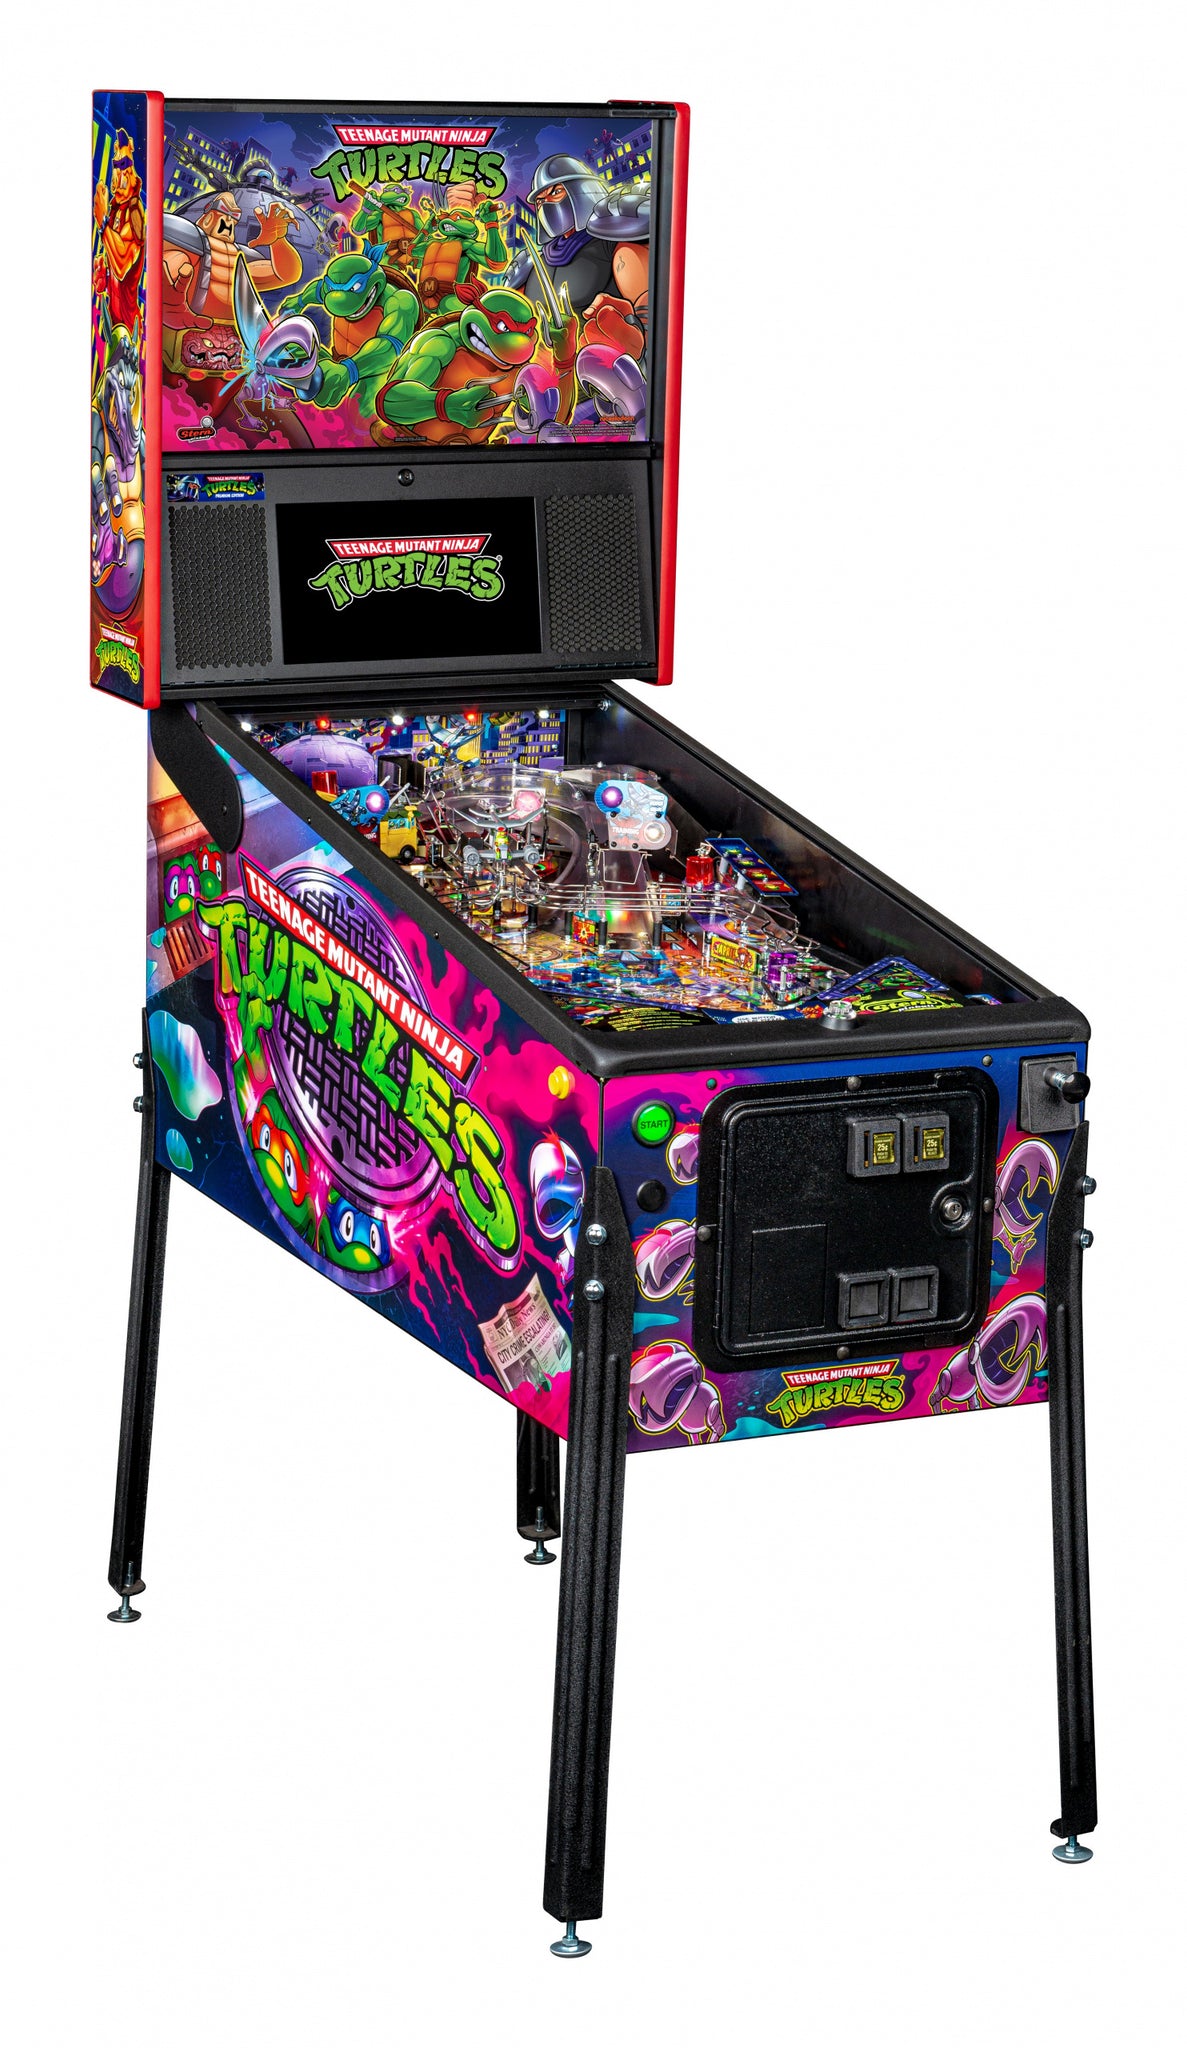 2020 Teenage Mutant Ninja Turtles Premium Pinball Machine by Stern